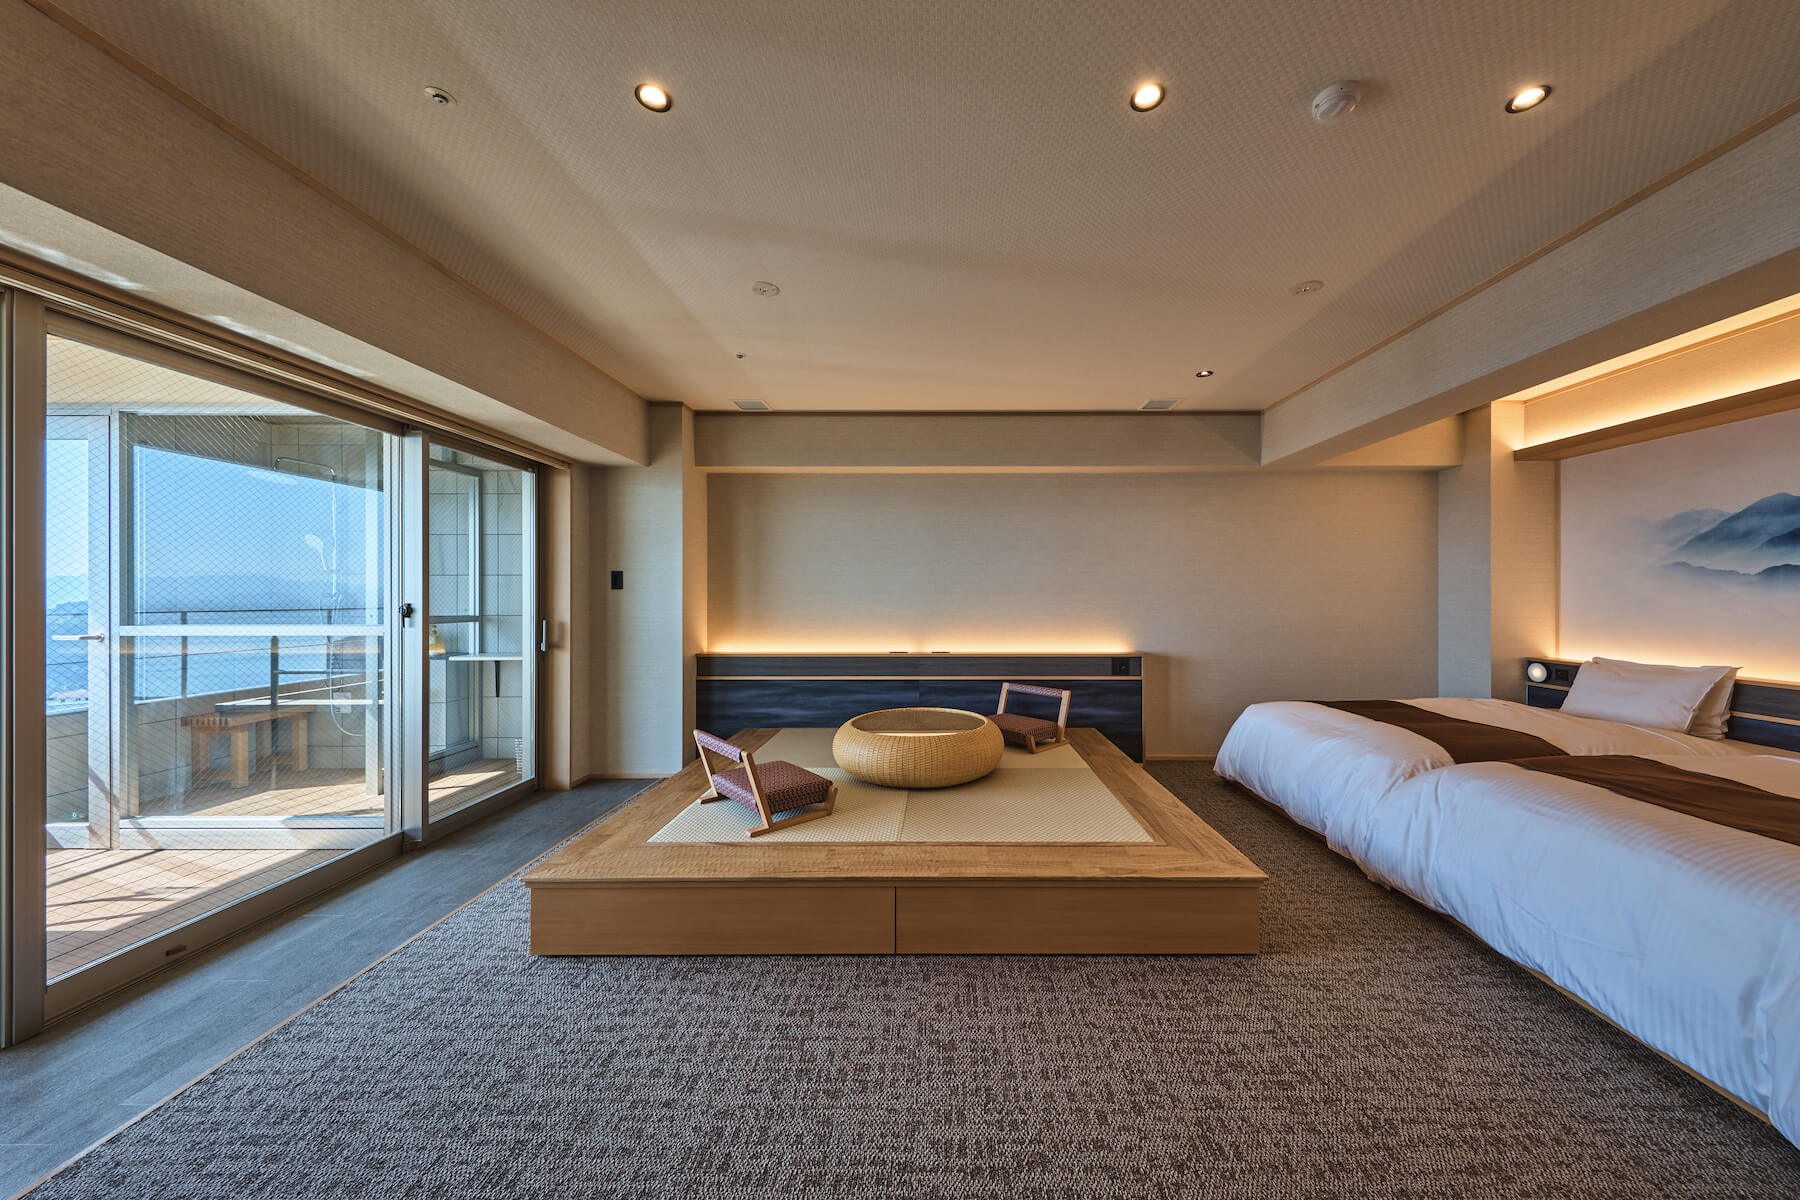 おごと温泉でも最も高台にある雄山荘の高層階9-10階にある4室のみの客室